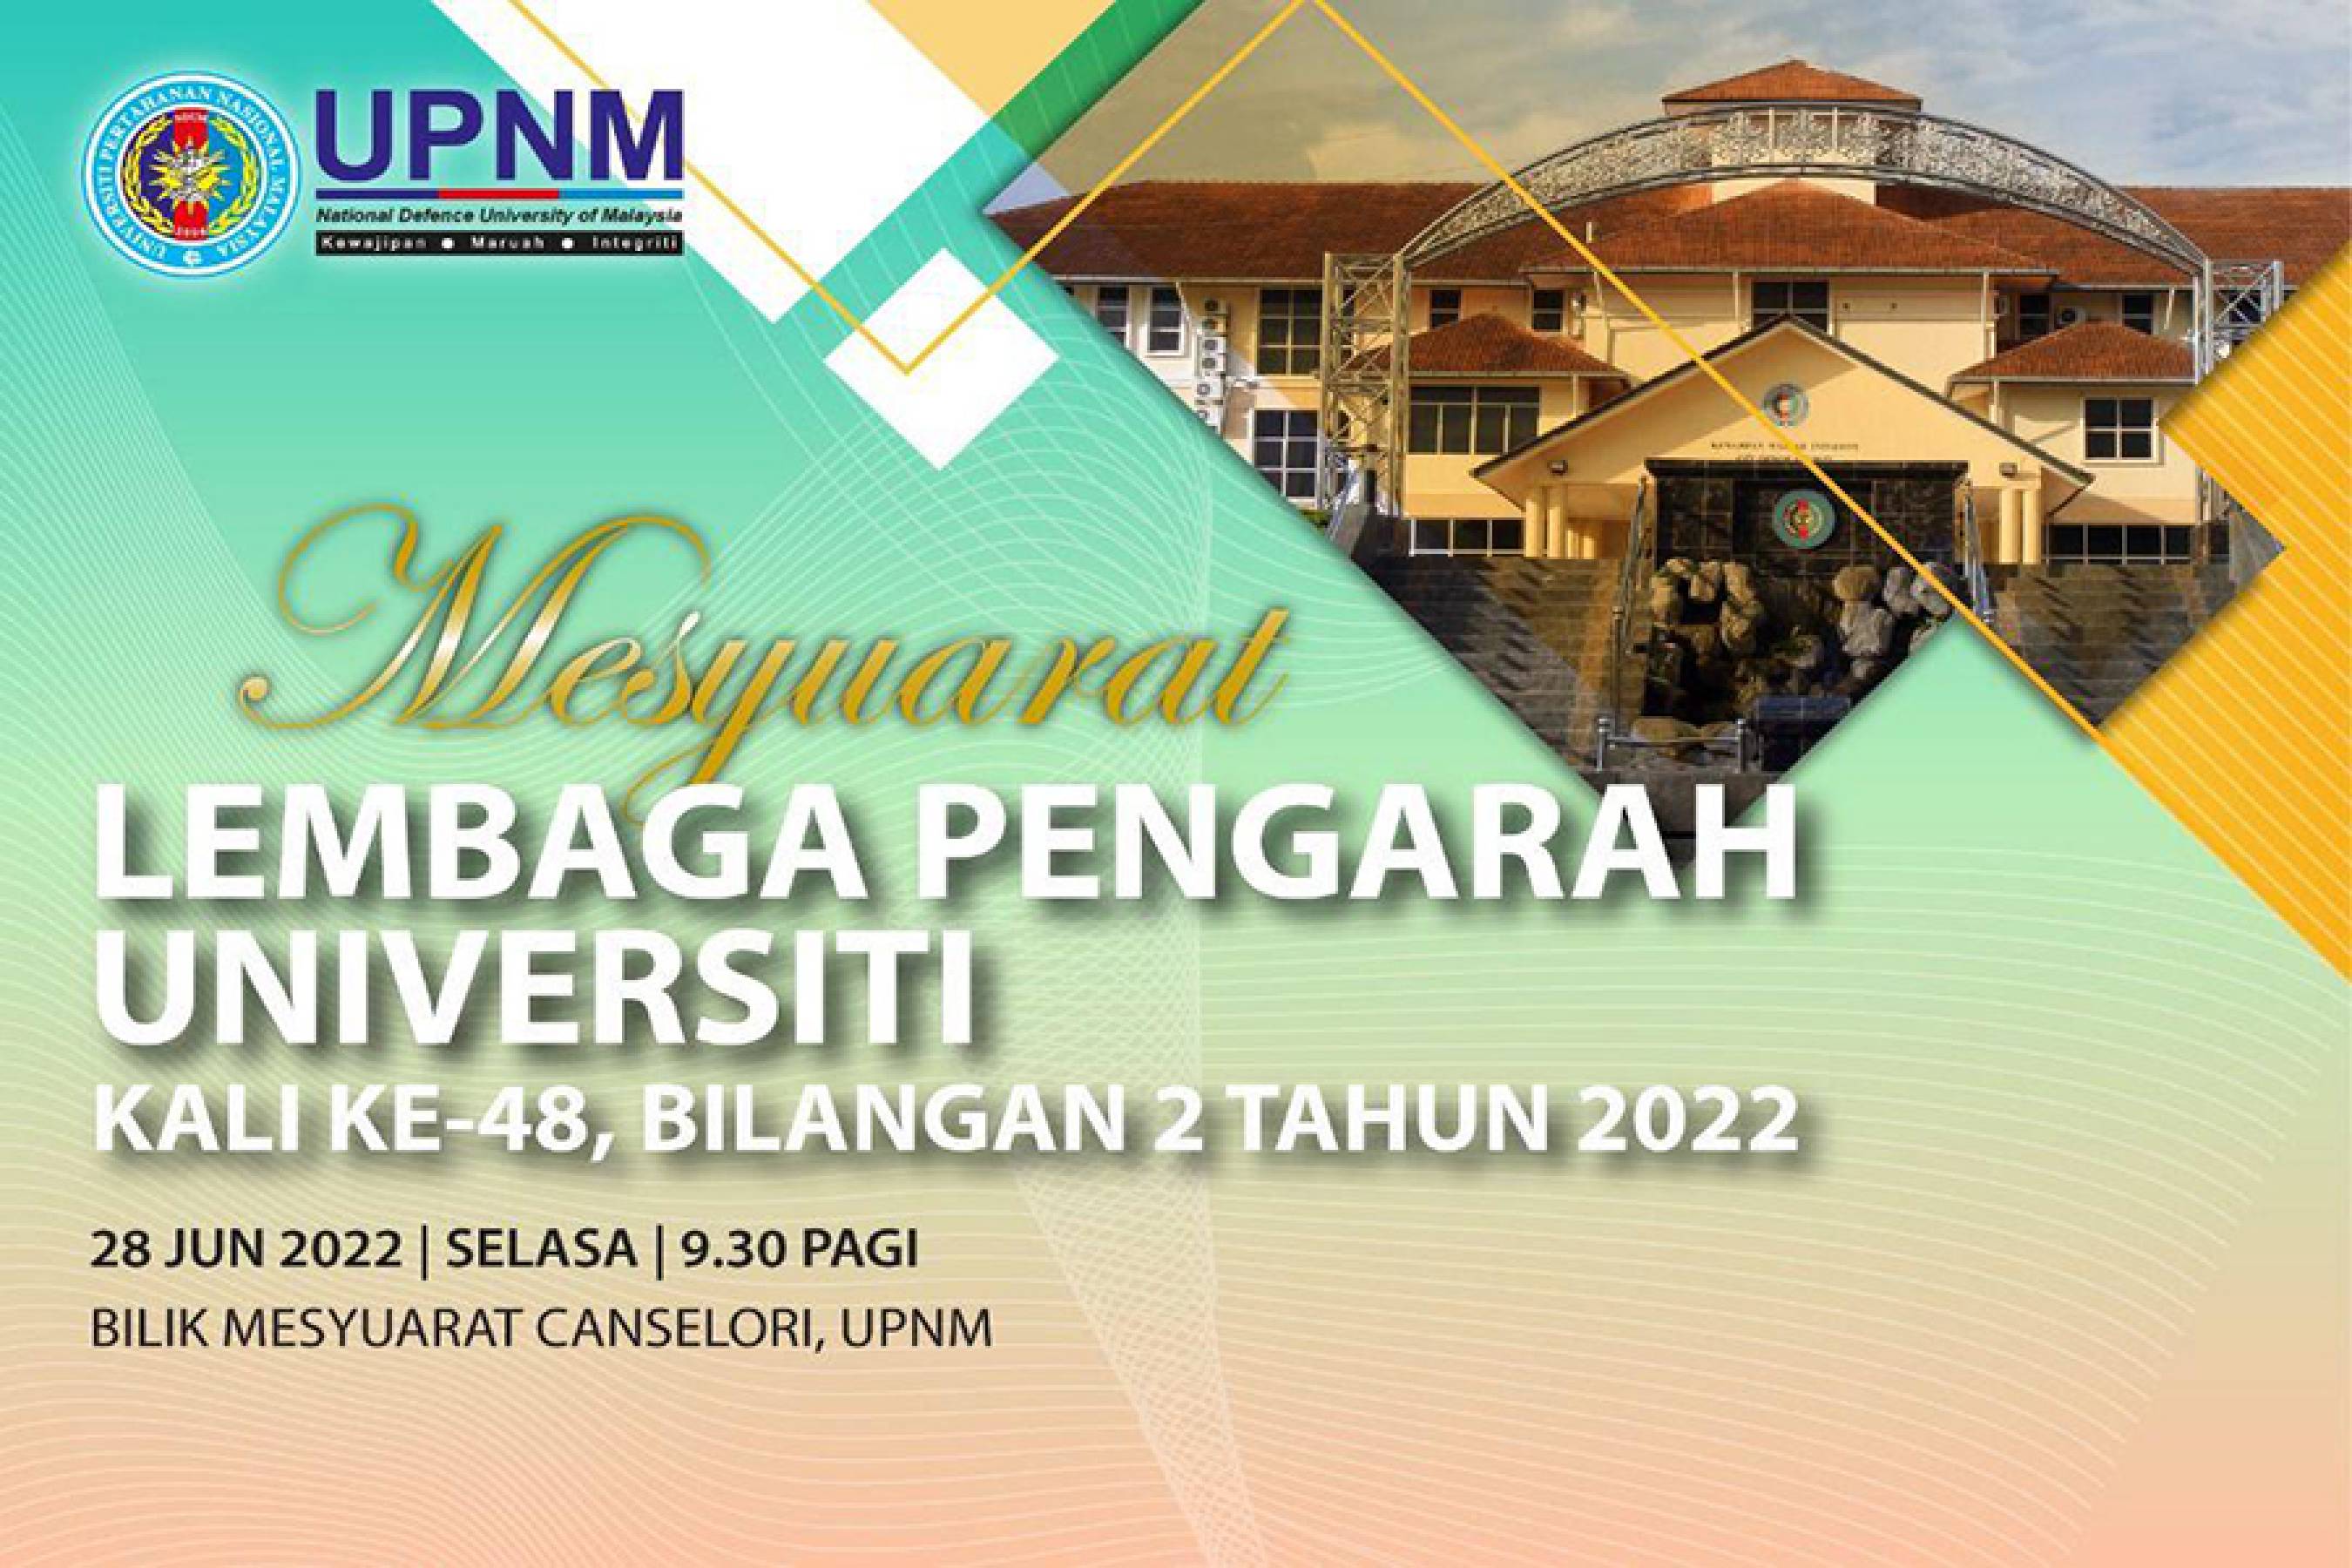 Mesyuarat Lembaga Pengarah Universiti (LPU) UPNM Ke-48 Bilangan 2 Tahun 2022